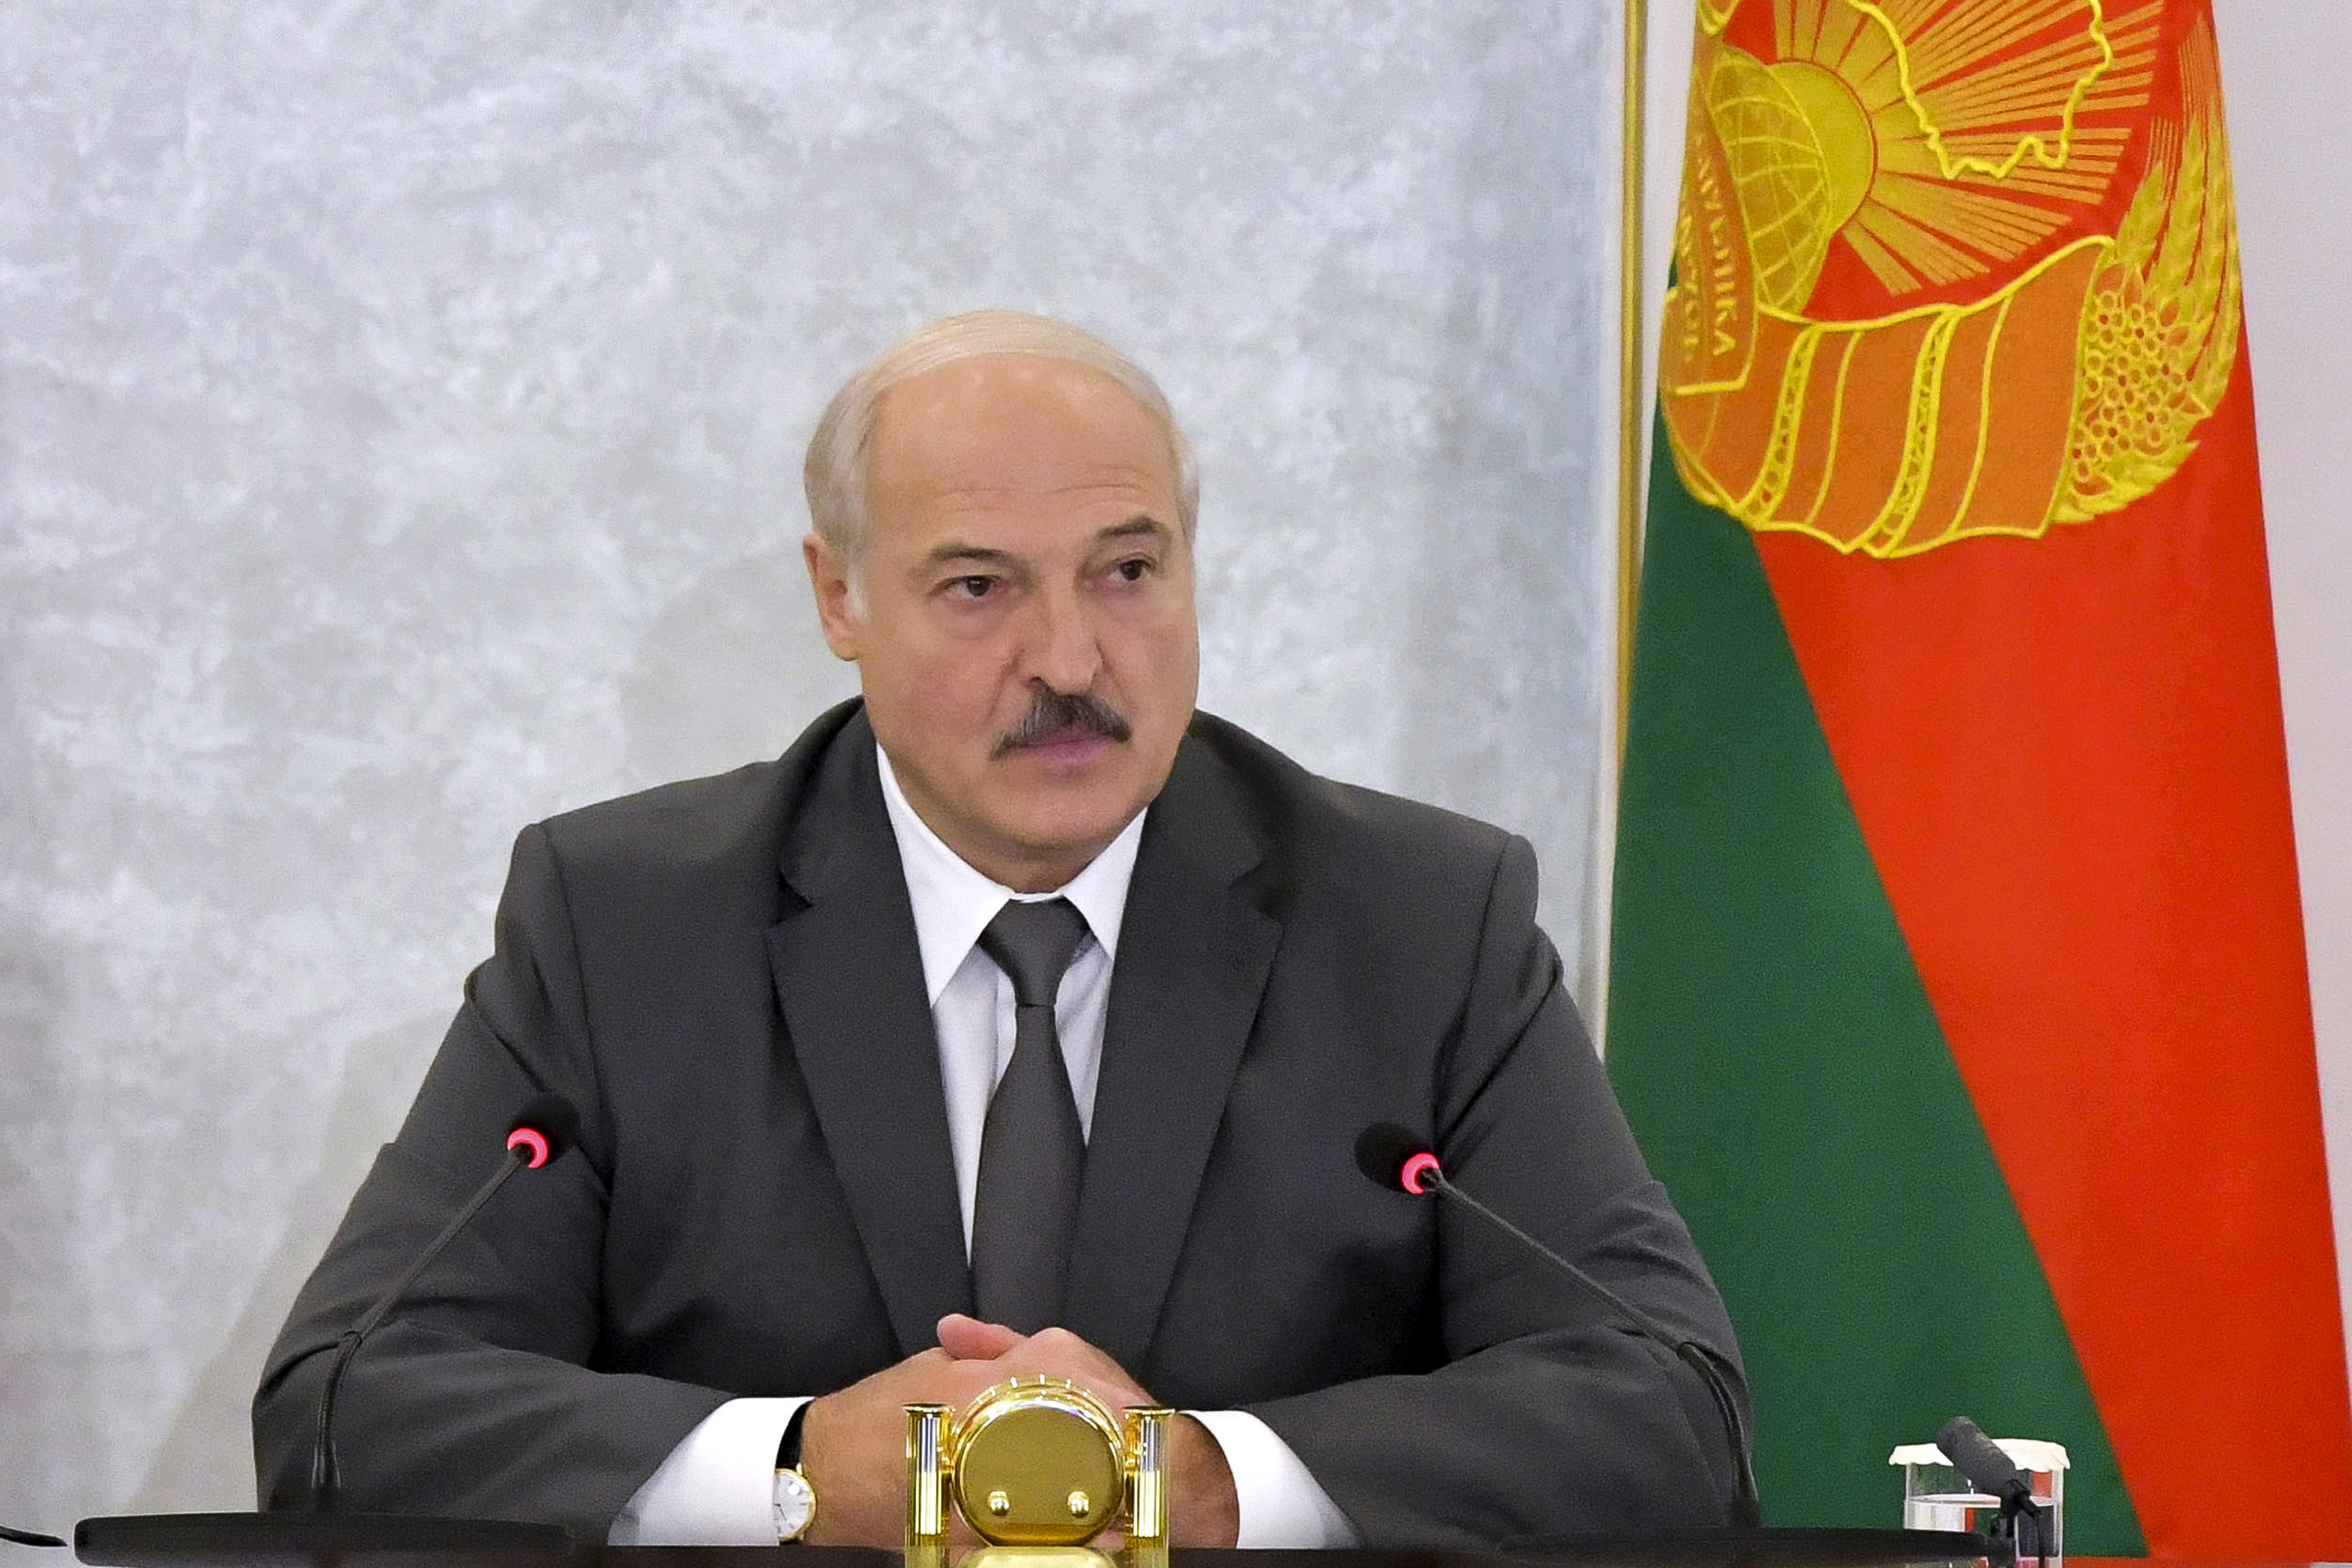 Александър Лукашенко преназначи правителството на Беларус в пълен състав без